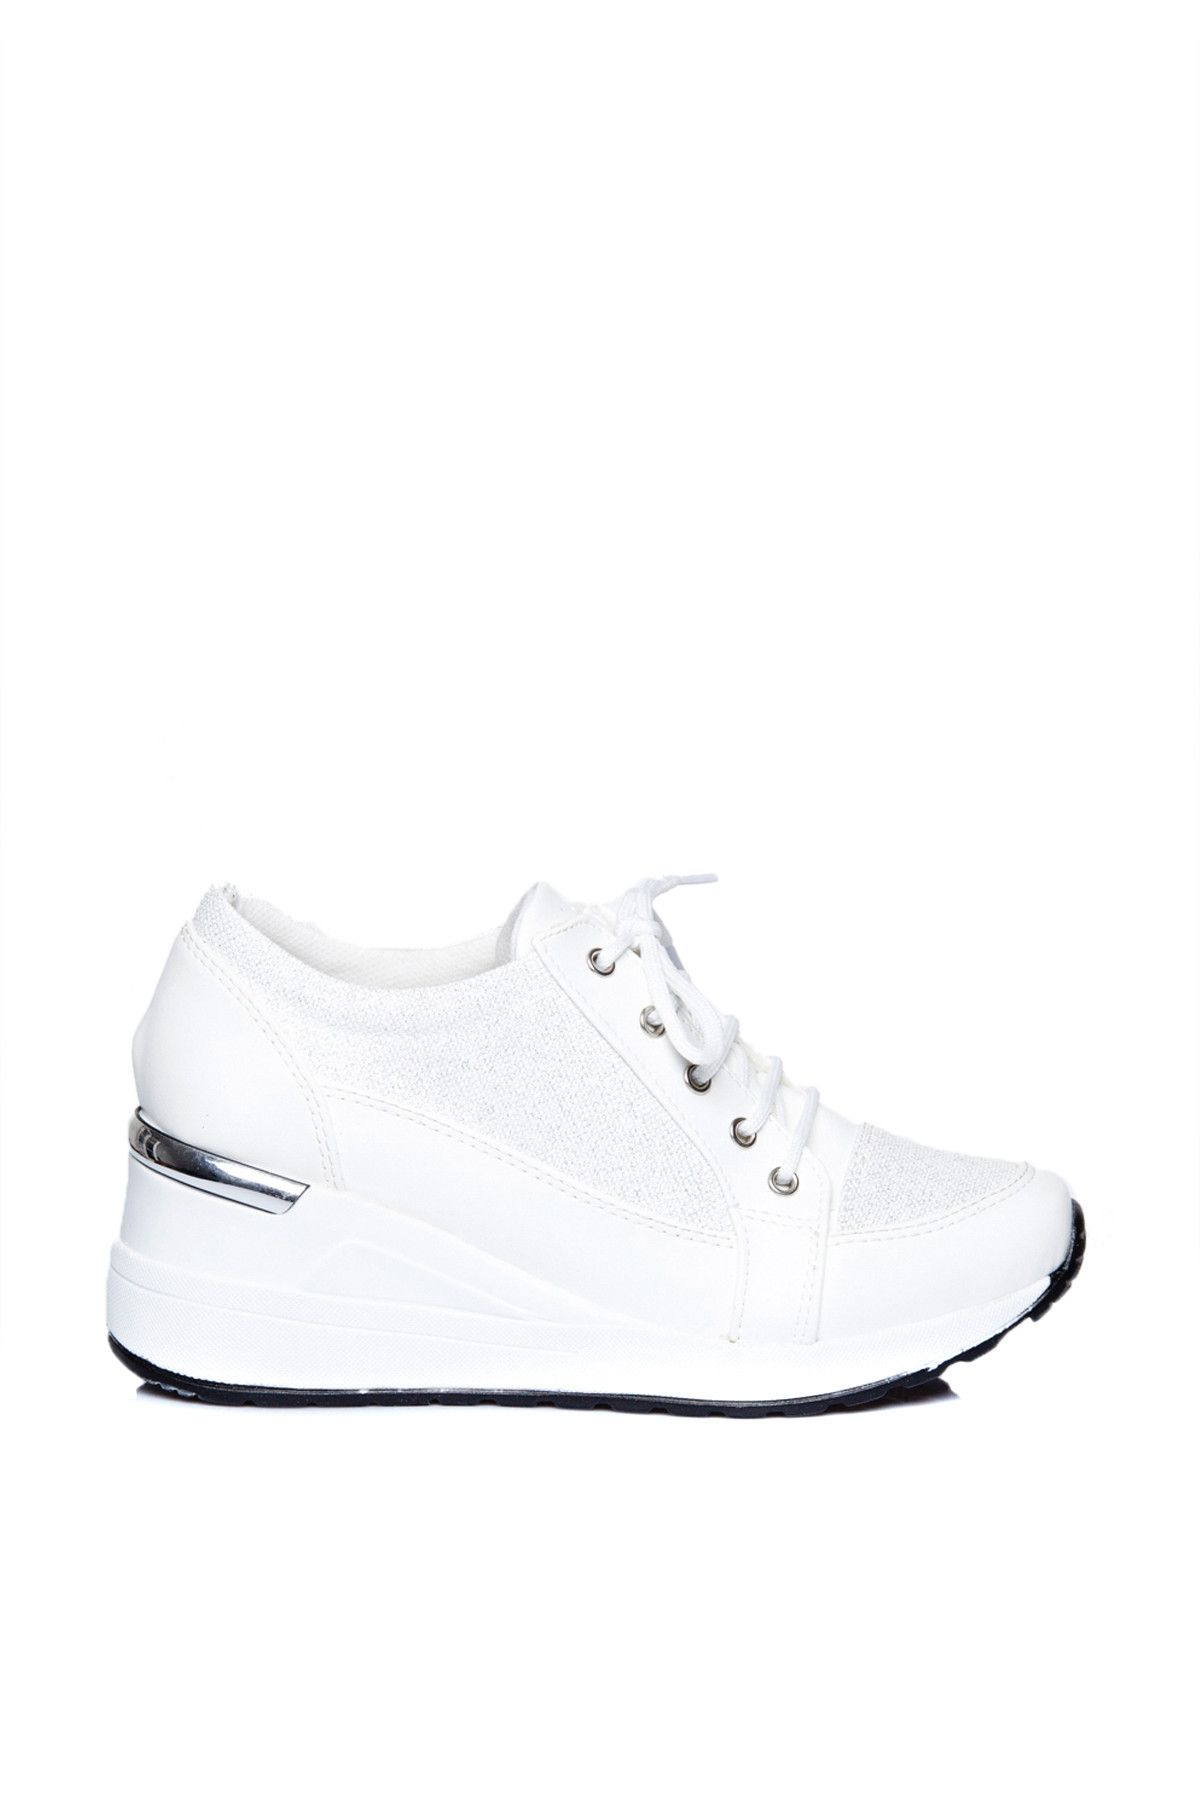 ayakkabıhavuzu Beyaz Kadın Ayakkabı FLZ94